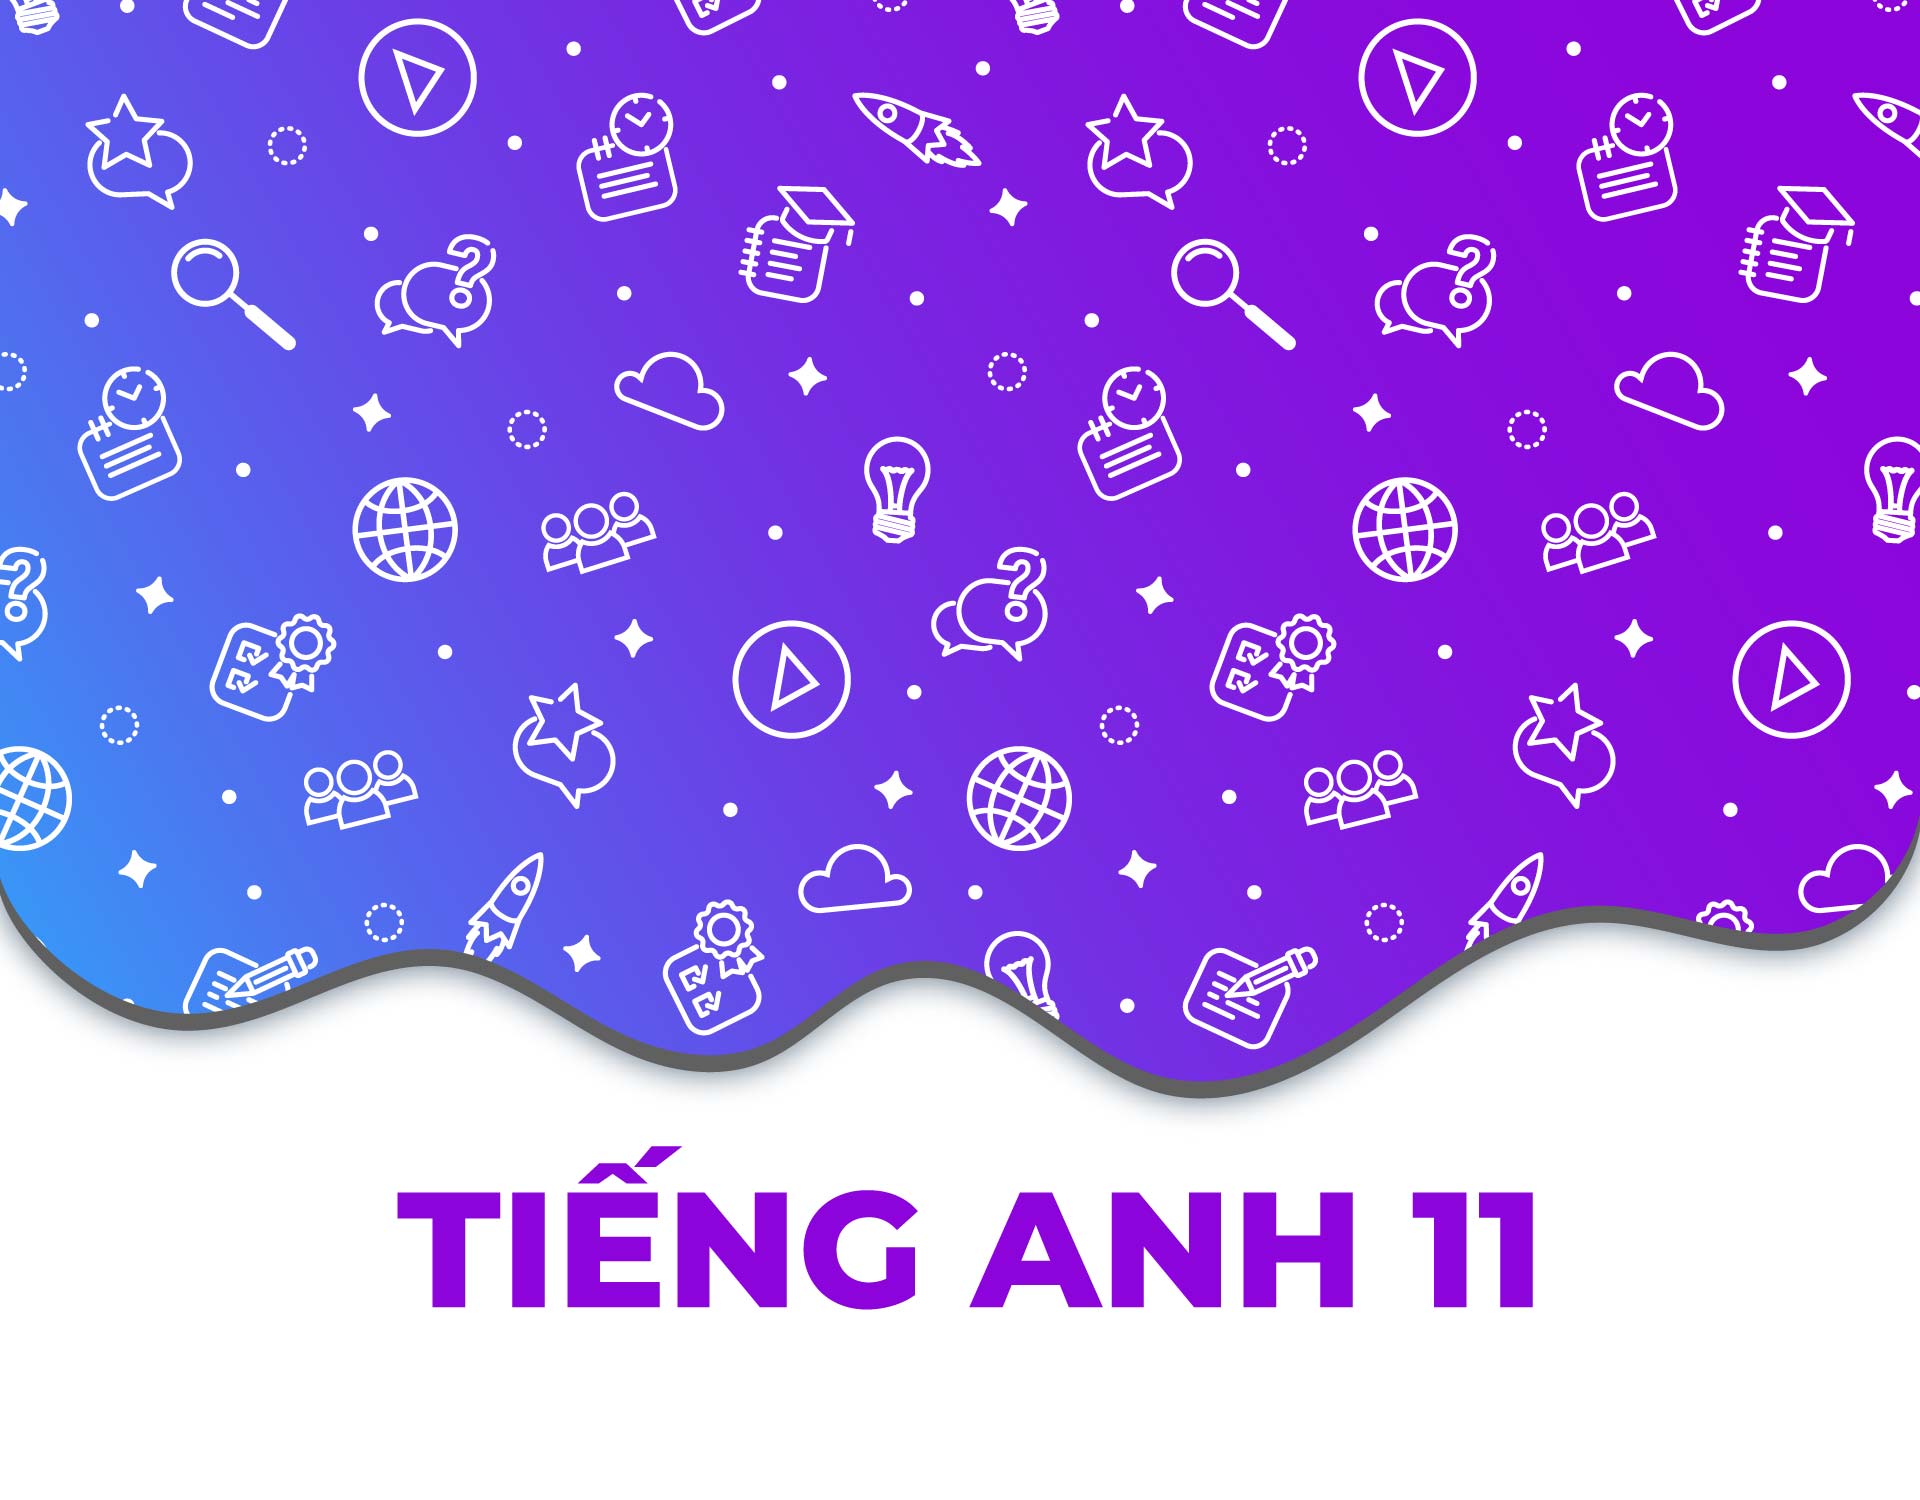 Tienganh11